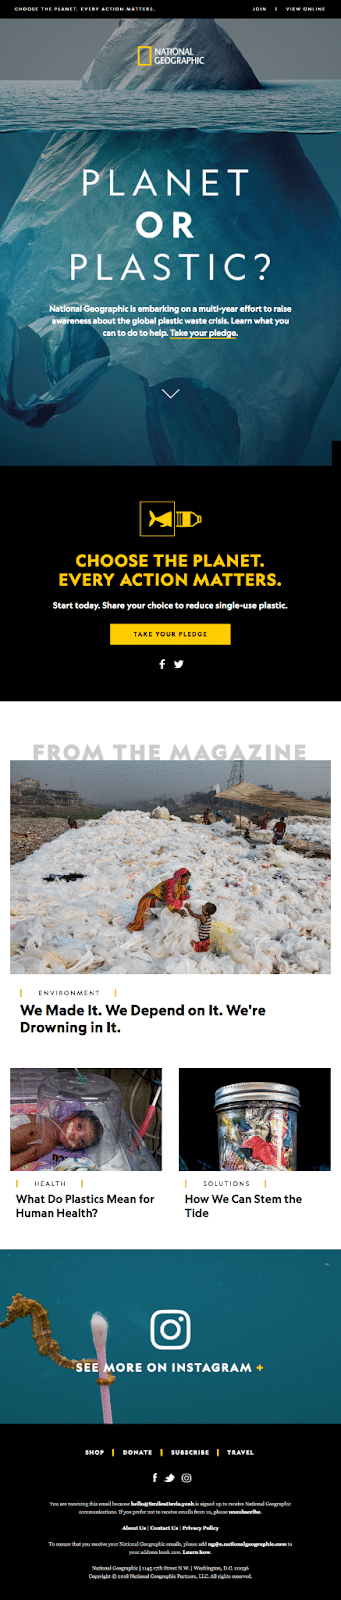 Exemplo de newsletter da National Geographic por e-mail